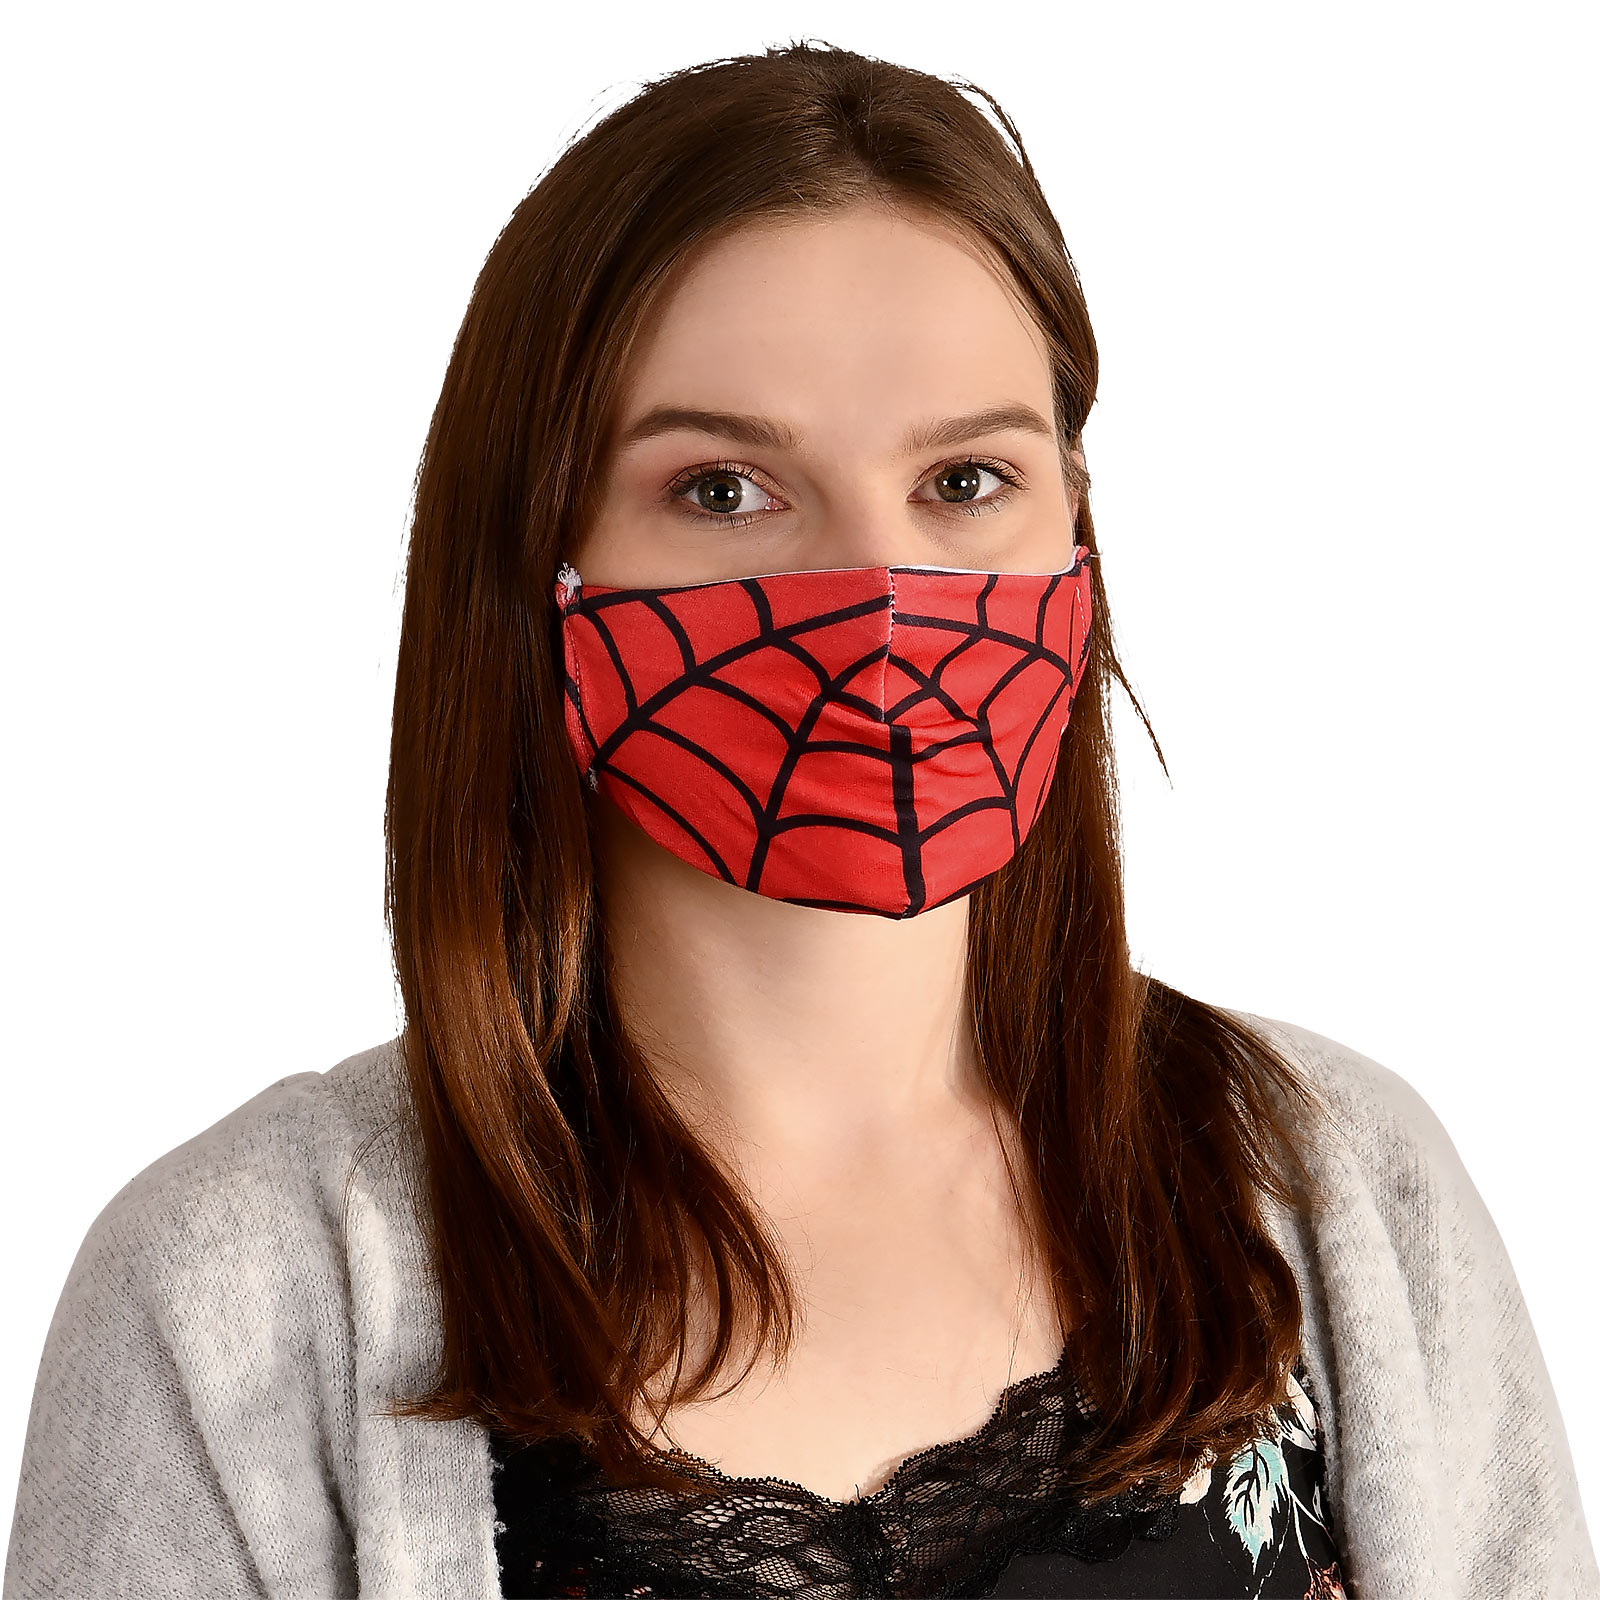 Spinnennetz Gesichtsmaske für Spider-Man Fans rot